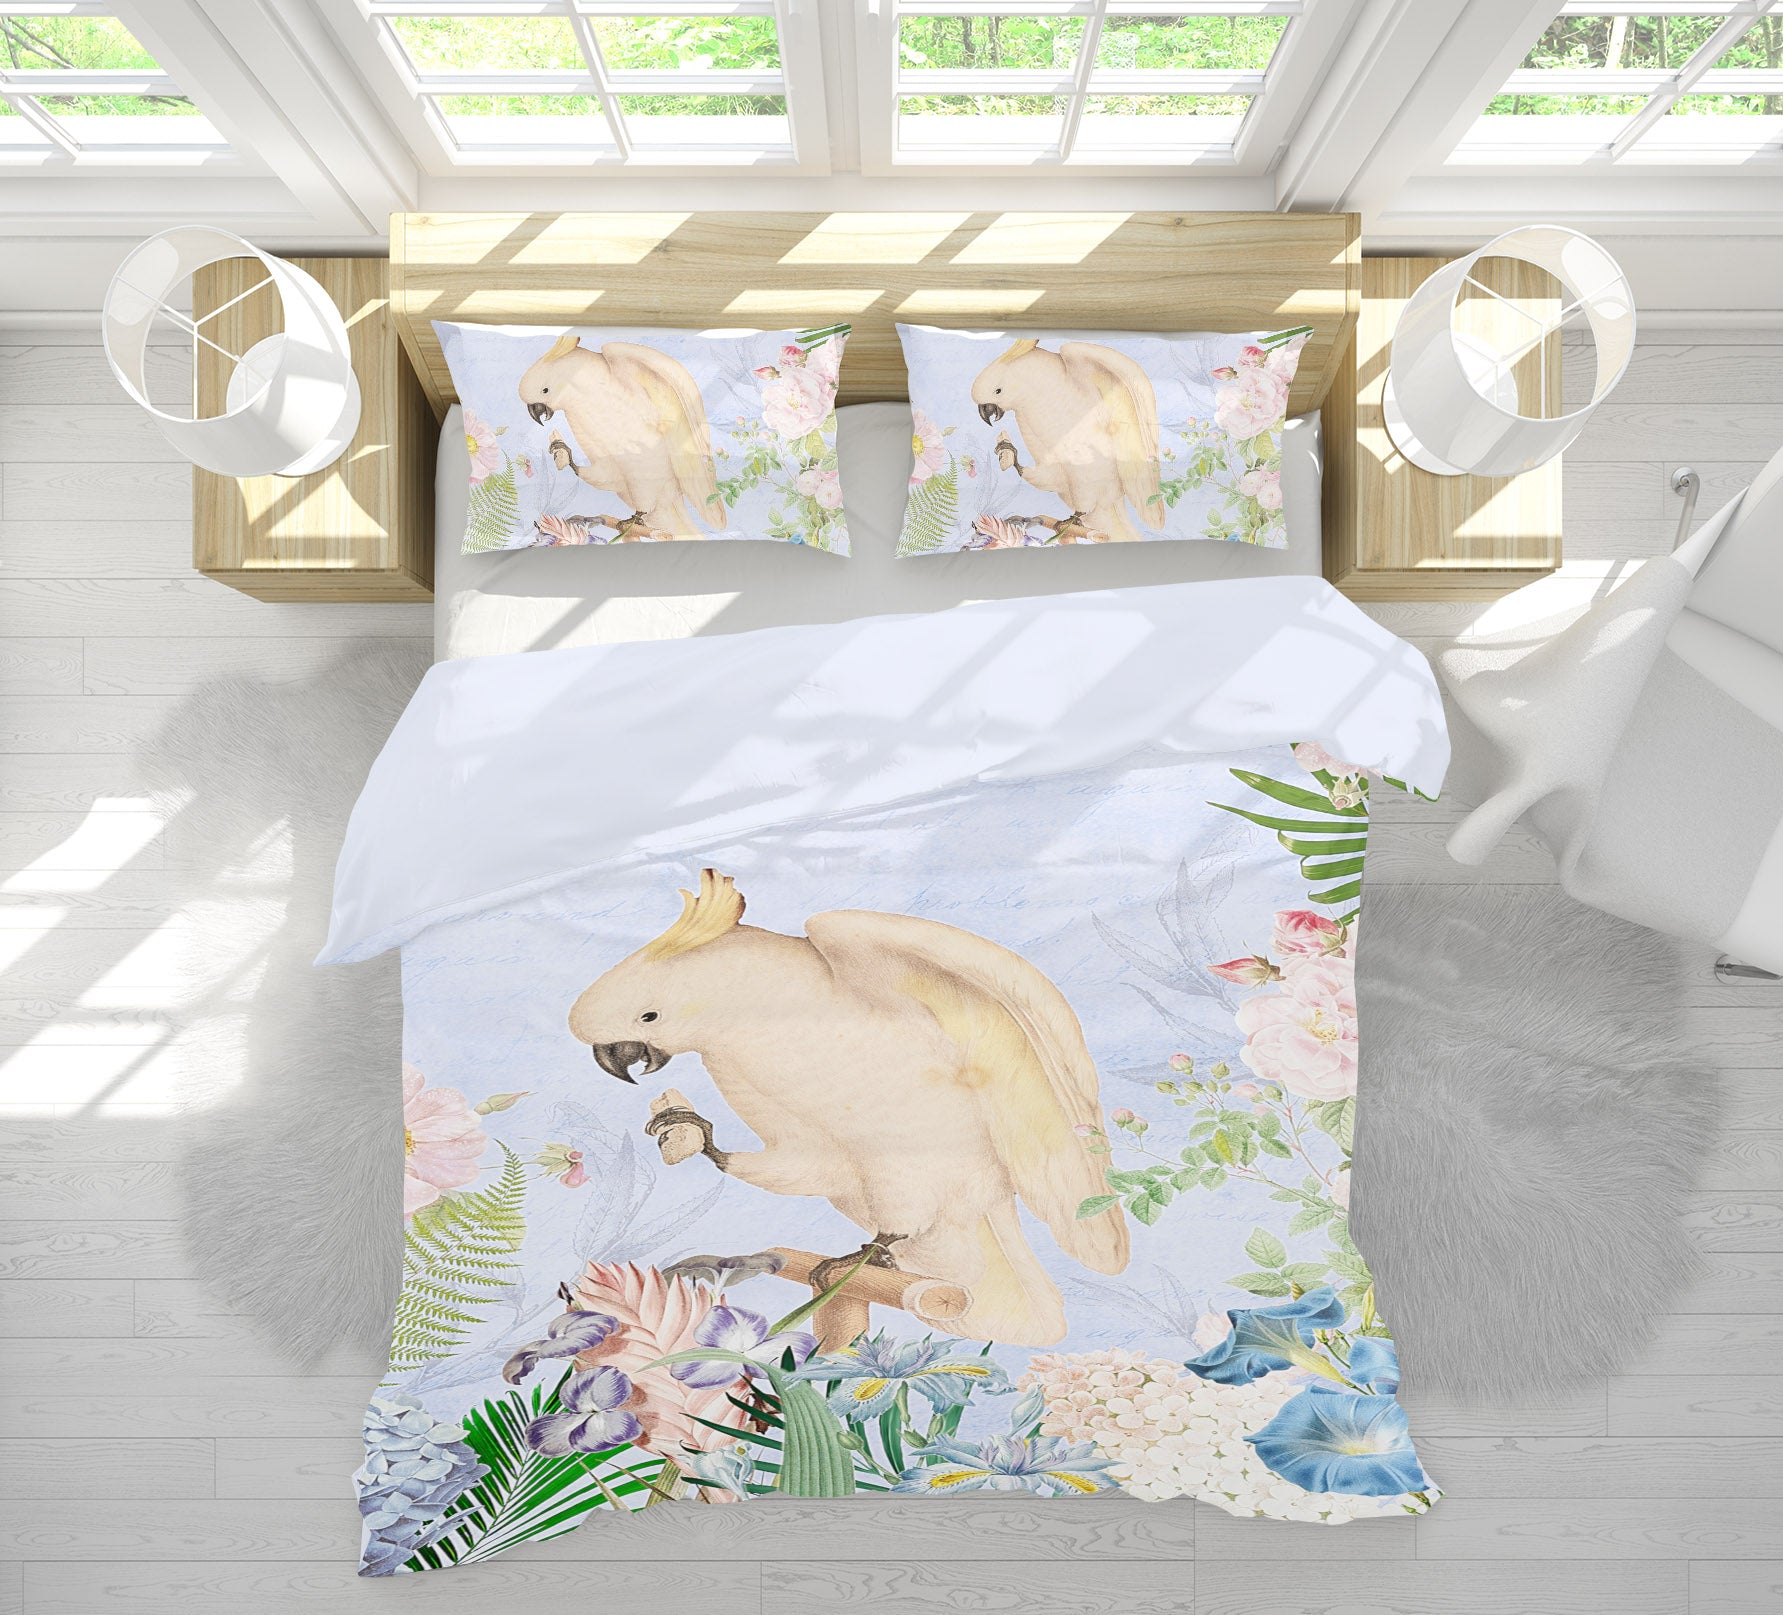 3D White Parrot 036 Uta Naumann Bedding Bed Pillowcases Quilt